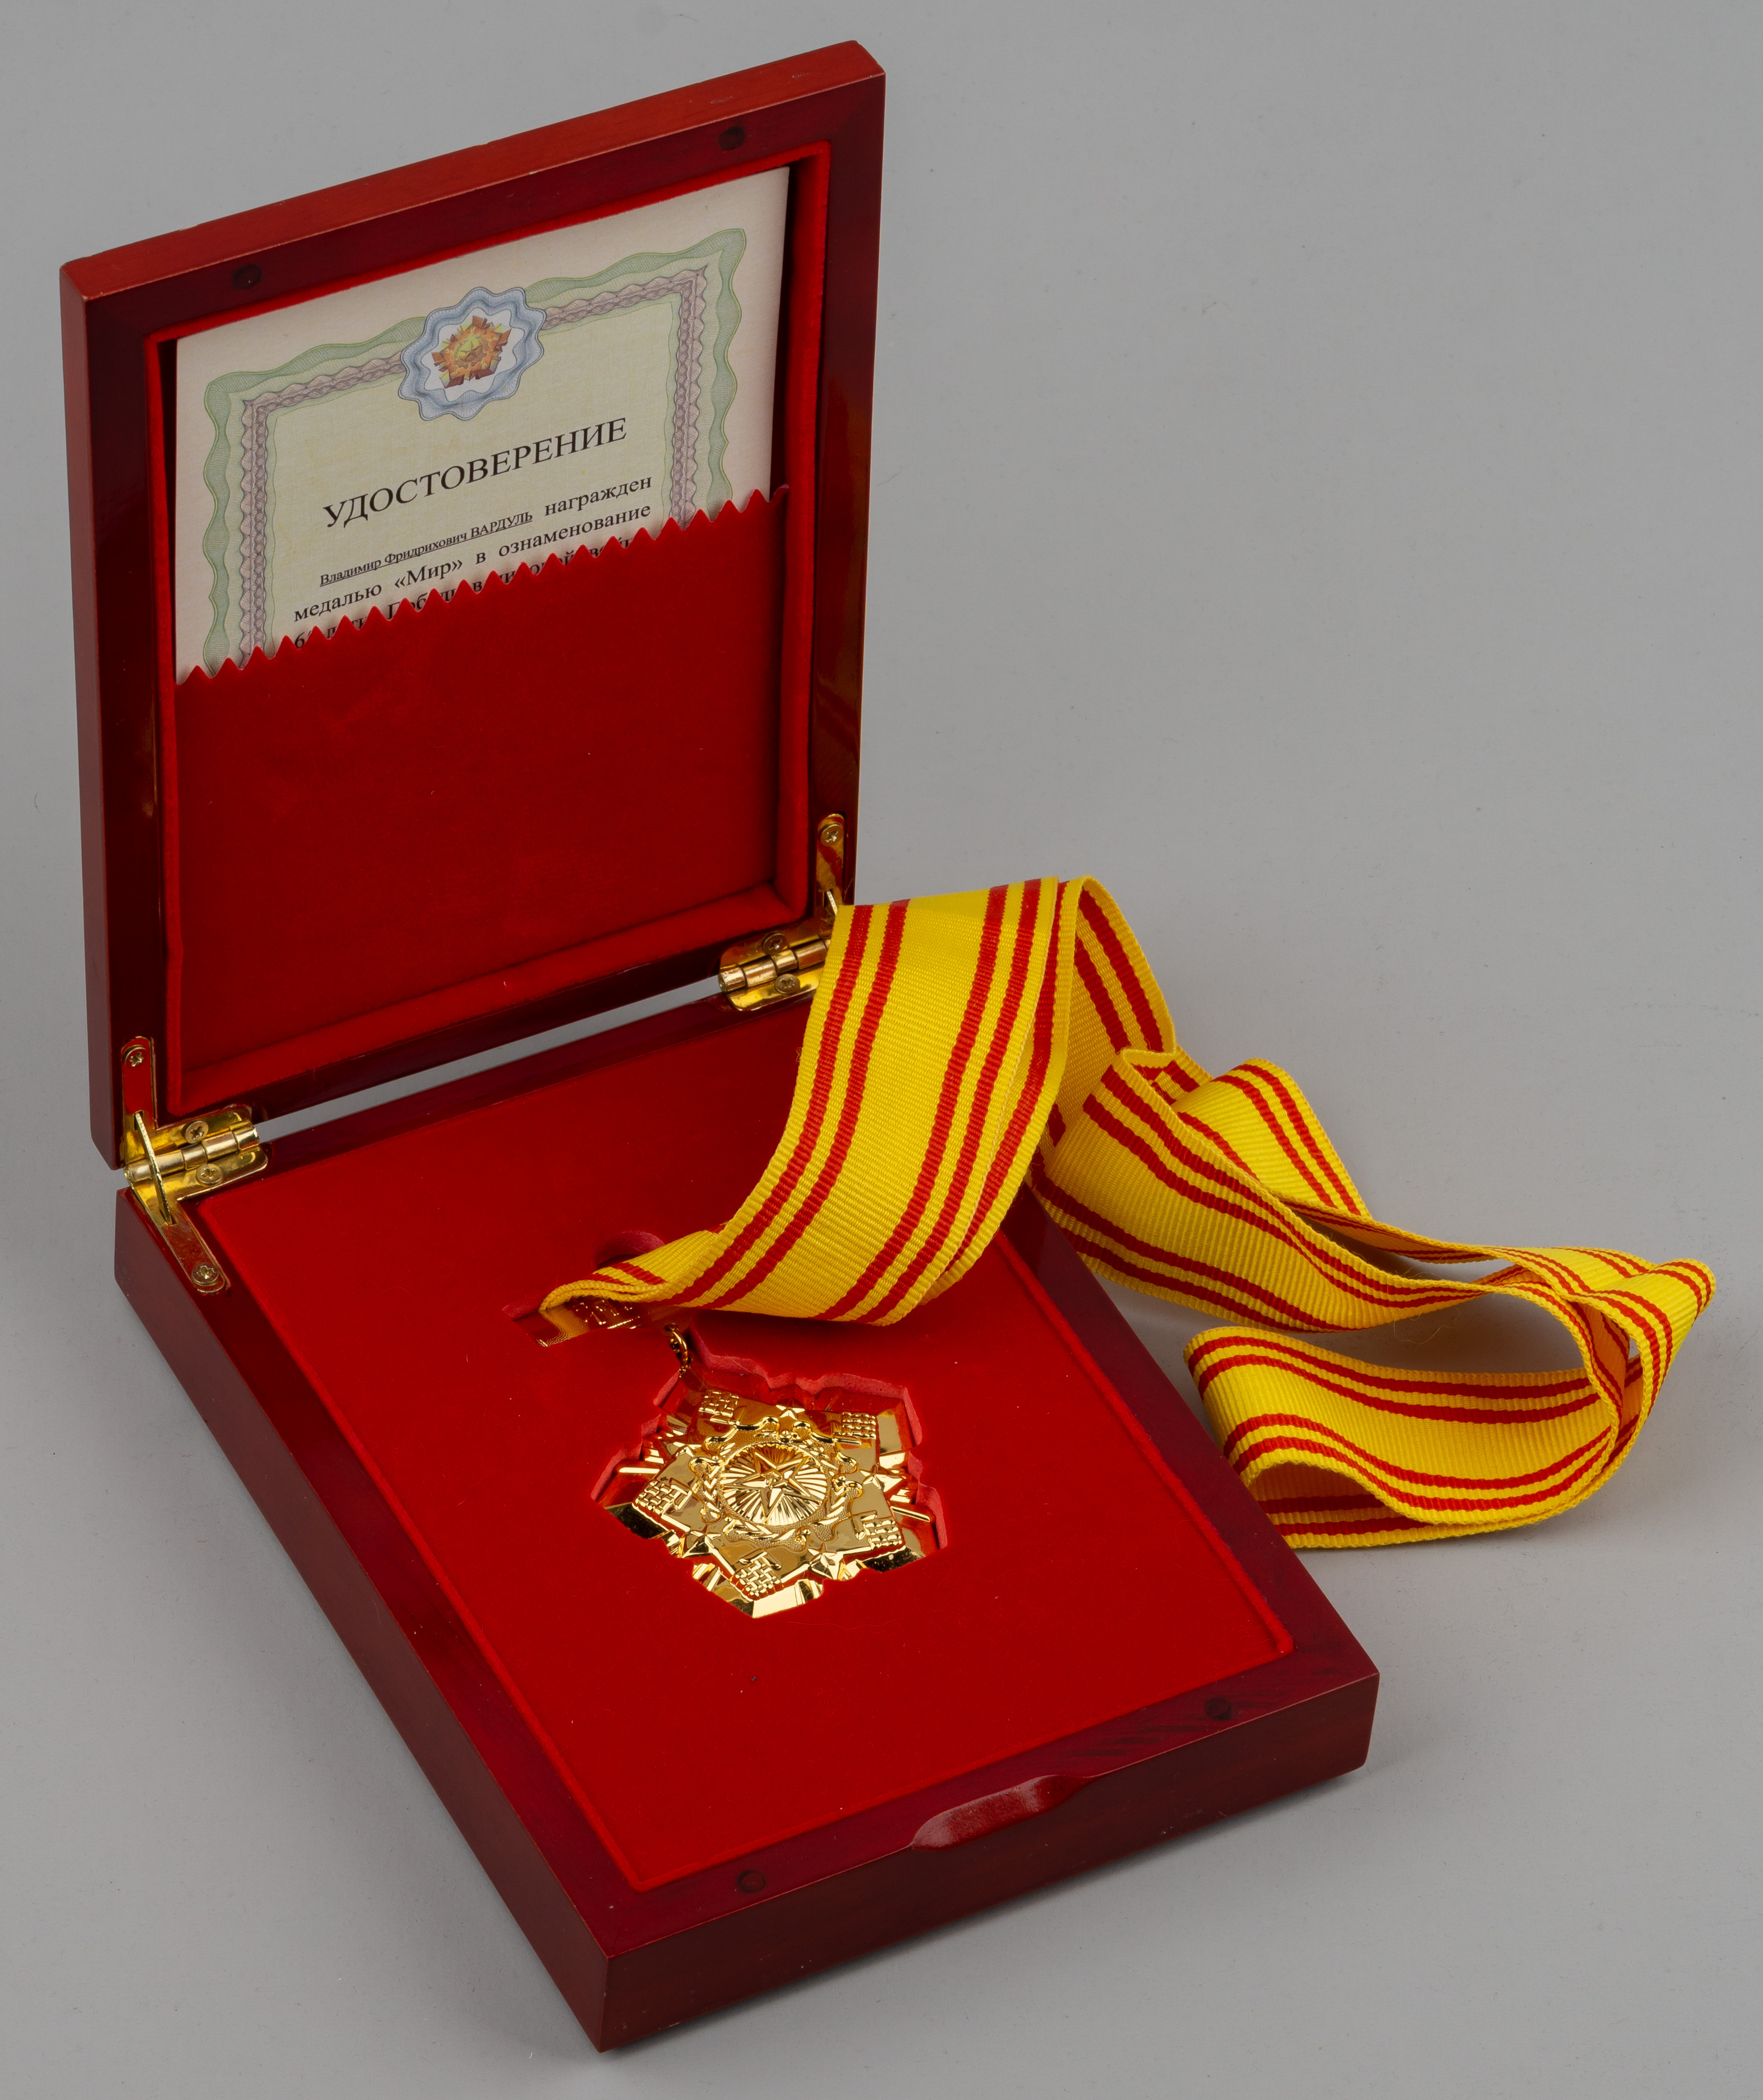 Медаль «Мир» в честь 65-летия Победы над фашизмом и войне с японскими захватчиками.<br>Китай, 2010 г.